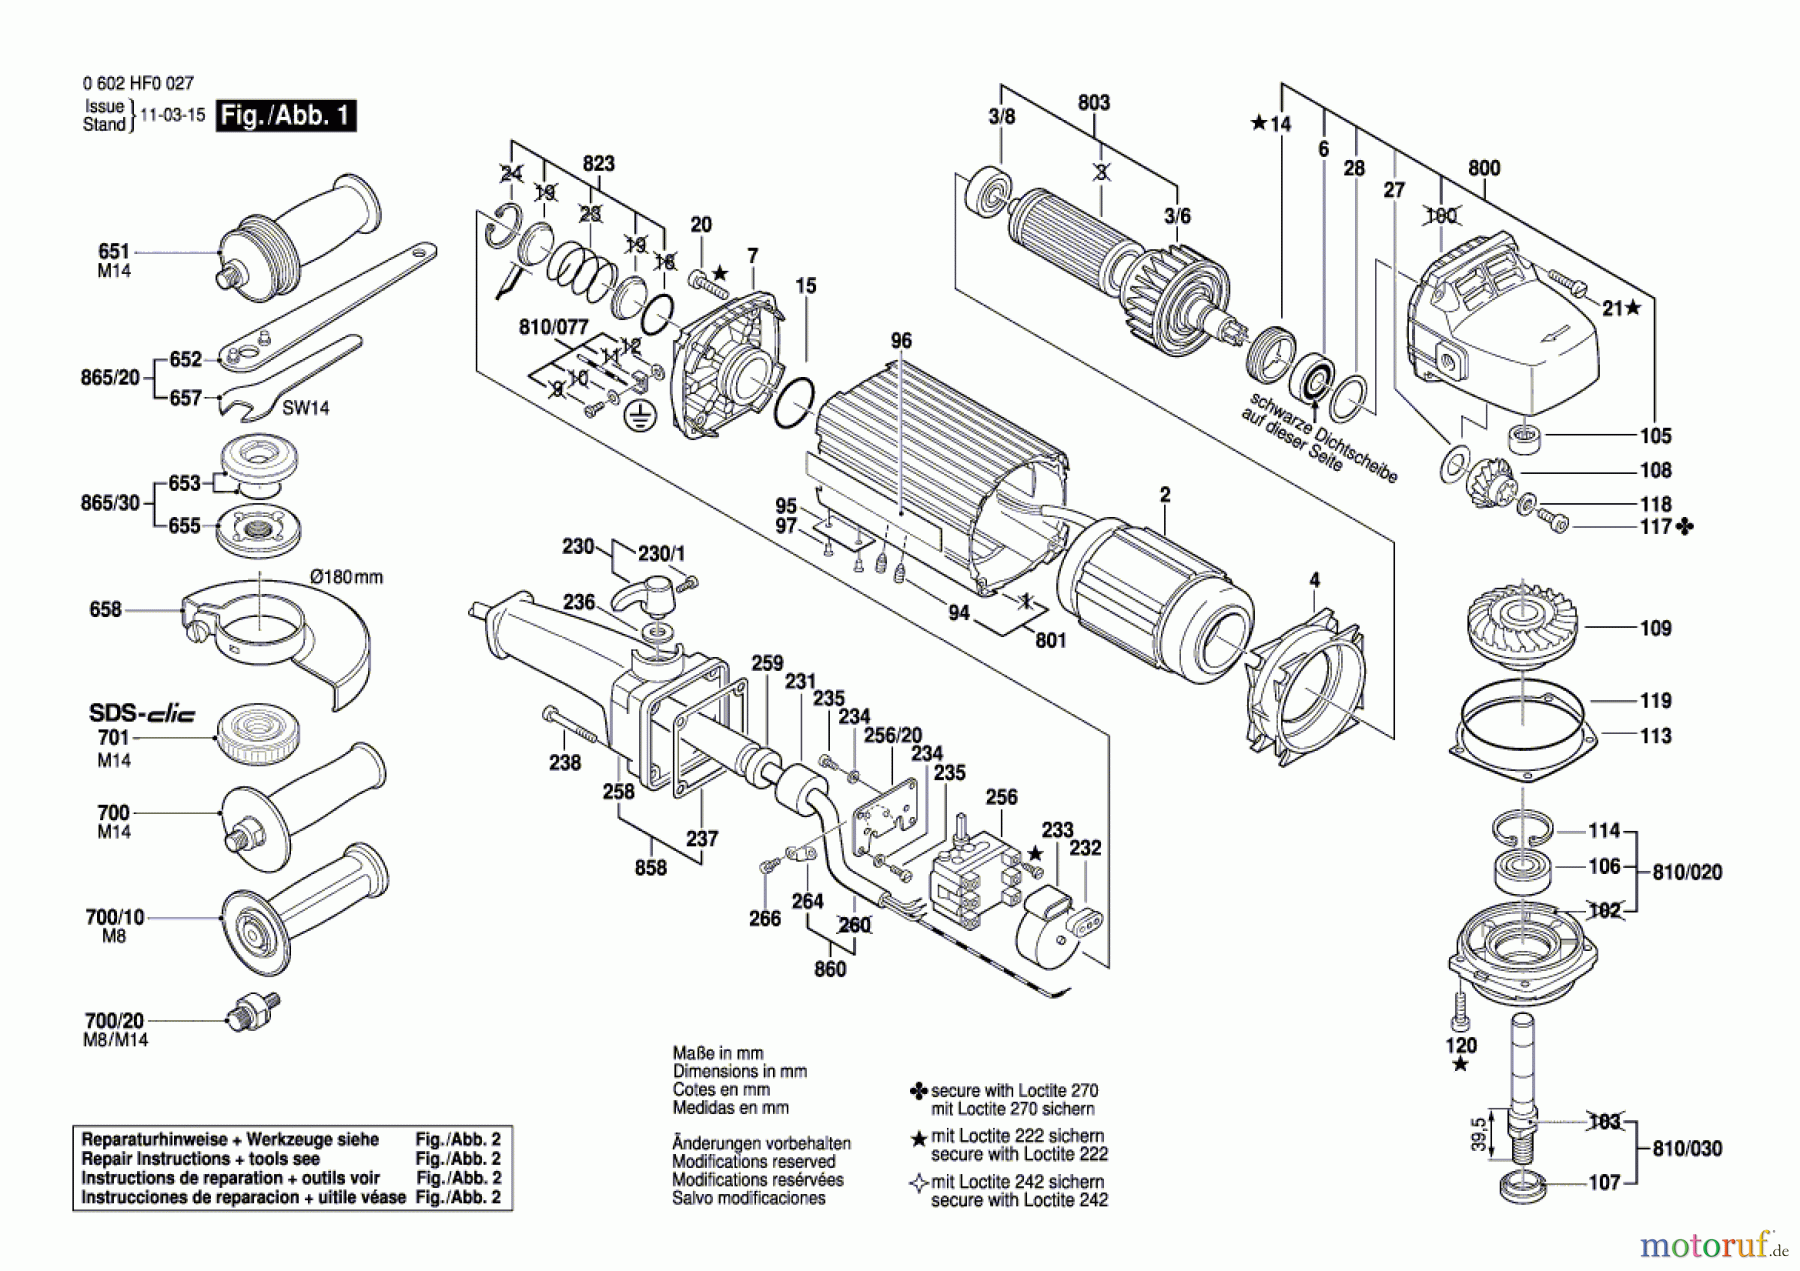  Bosch Werkzeug Winkelschleifer GR.810 Seite 1